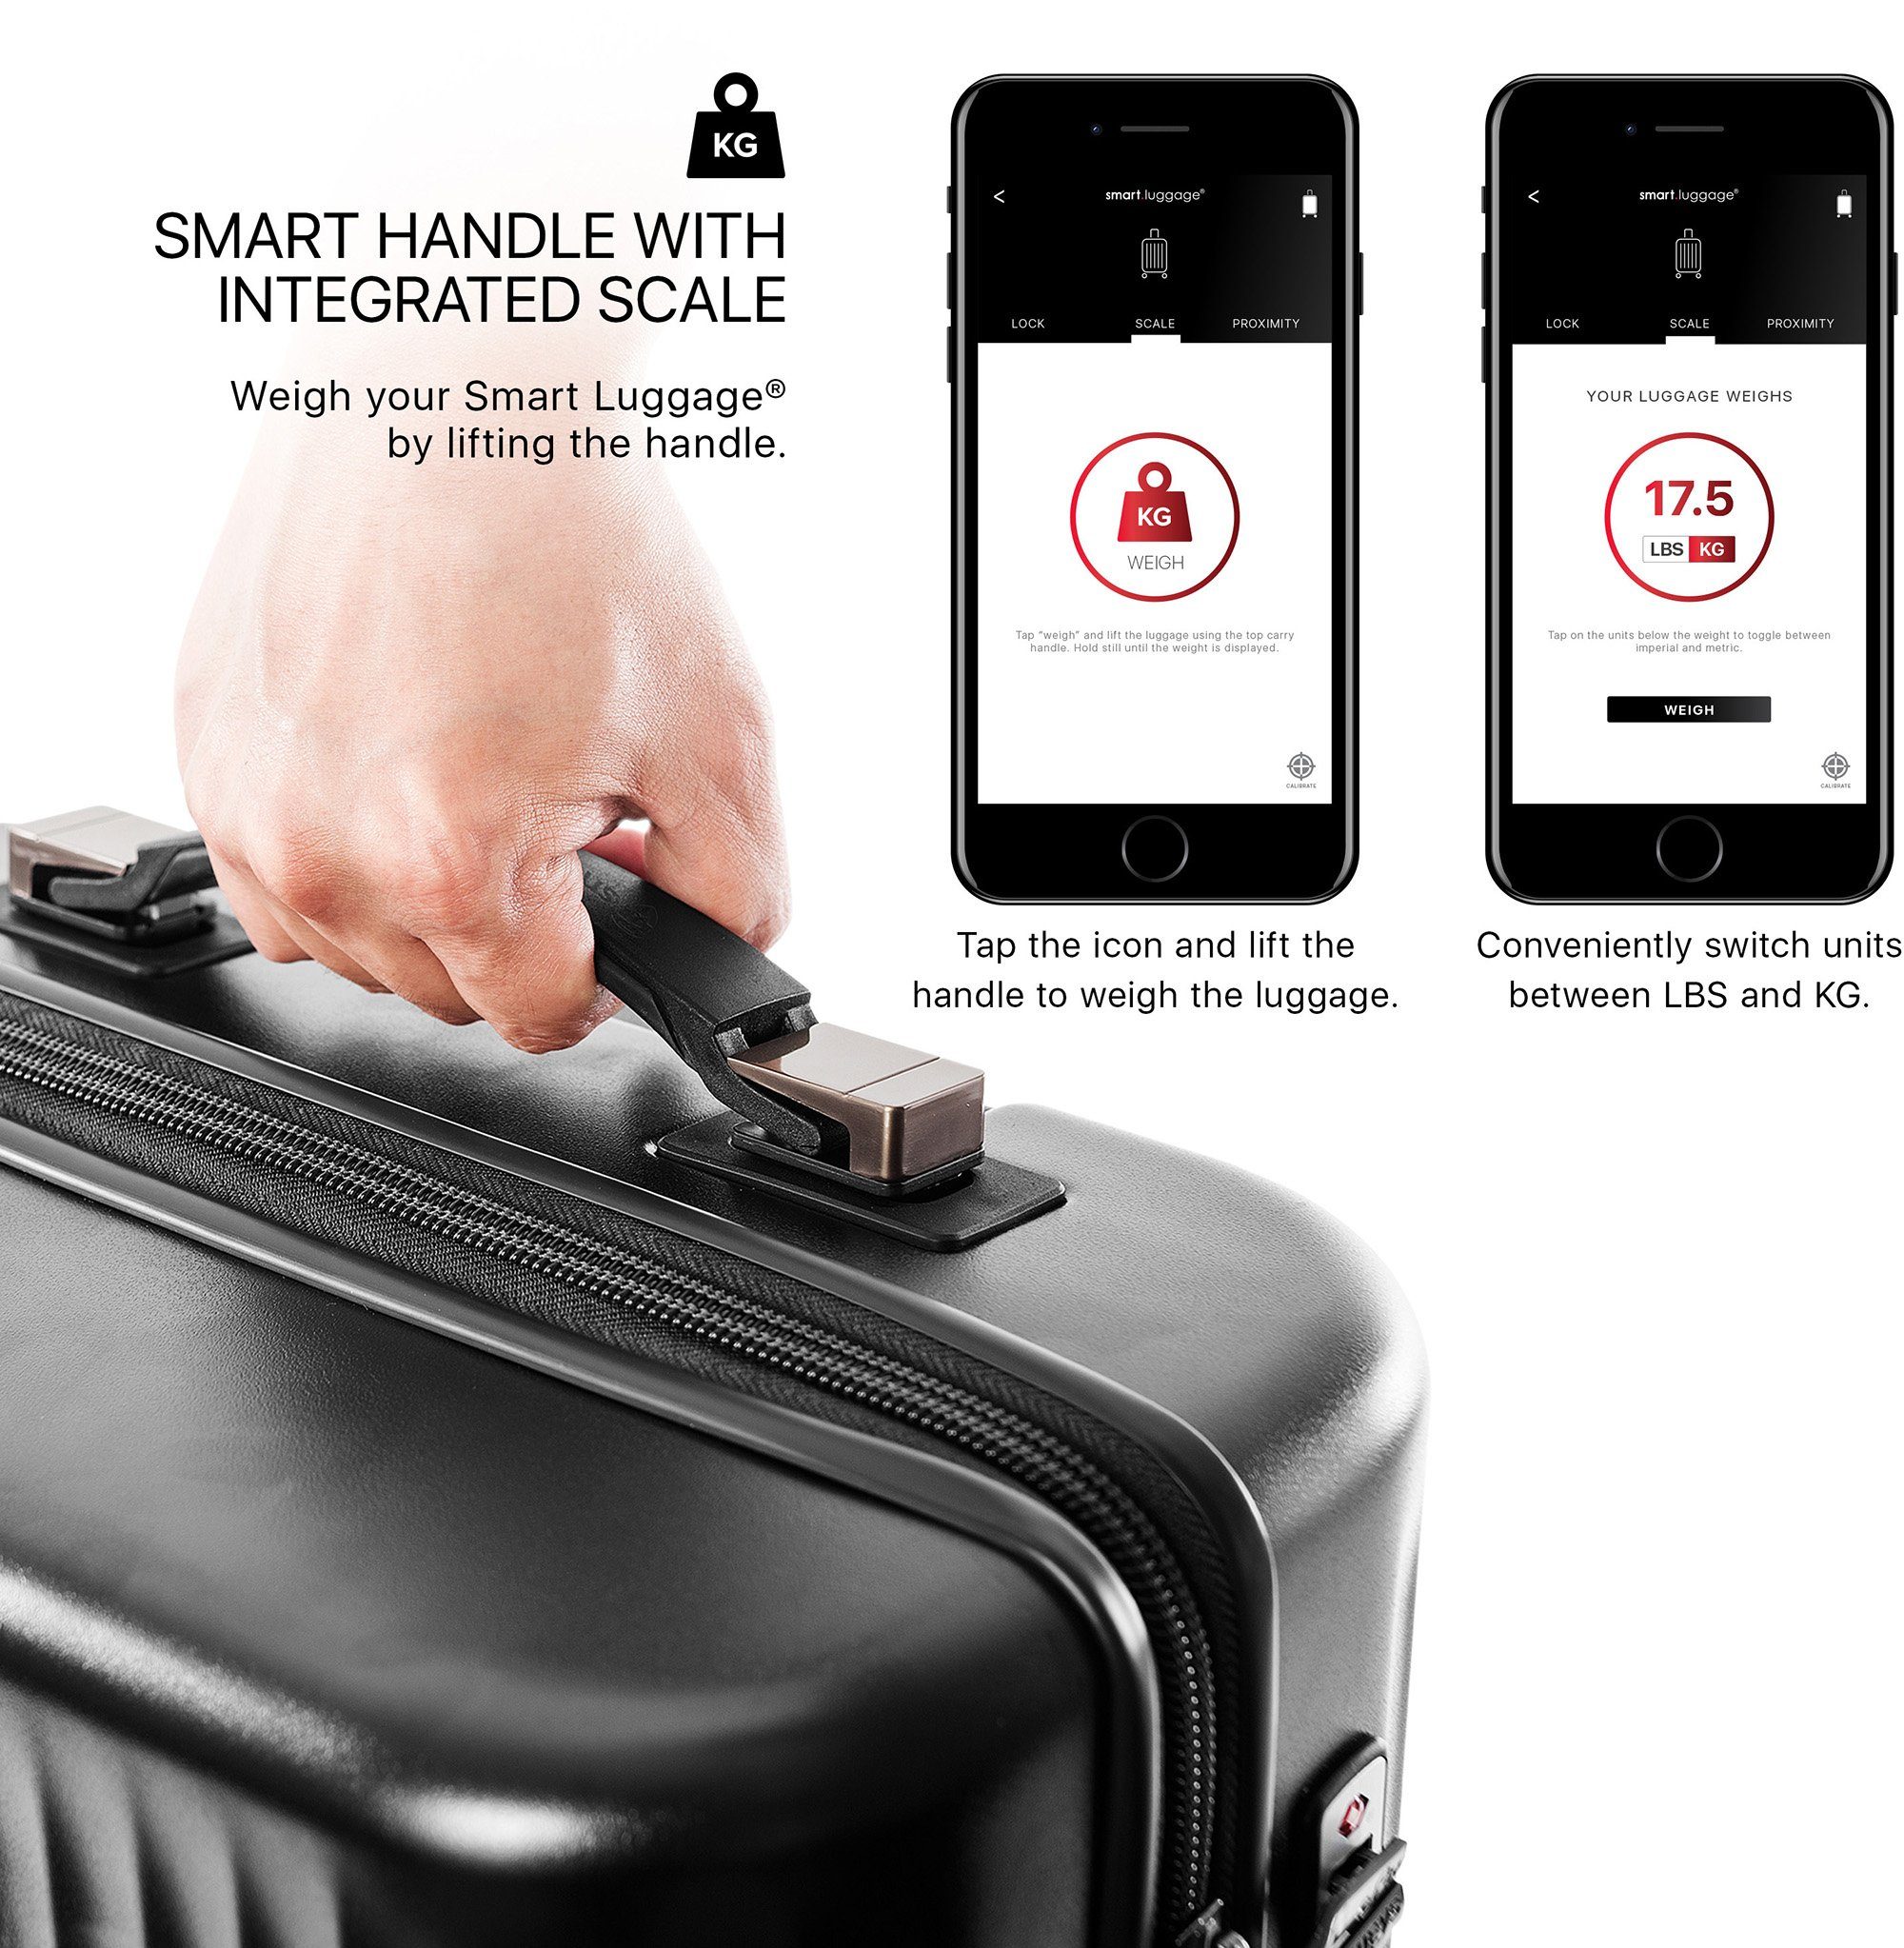 Heys Hartschalen-Trolley Smart Luggage®, mit 76 Rollen, App-Funktion vollständig 4 venetztes High-End-Gepäck Silver cm